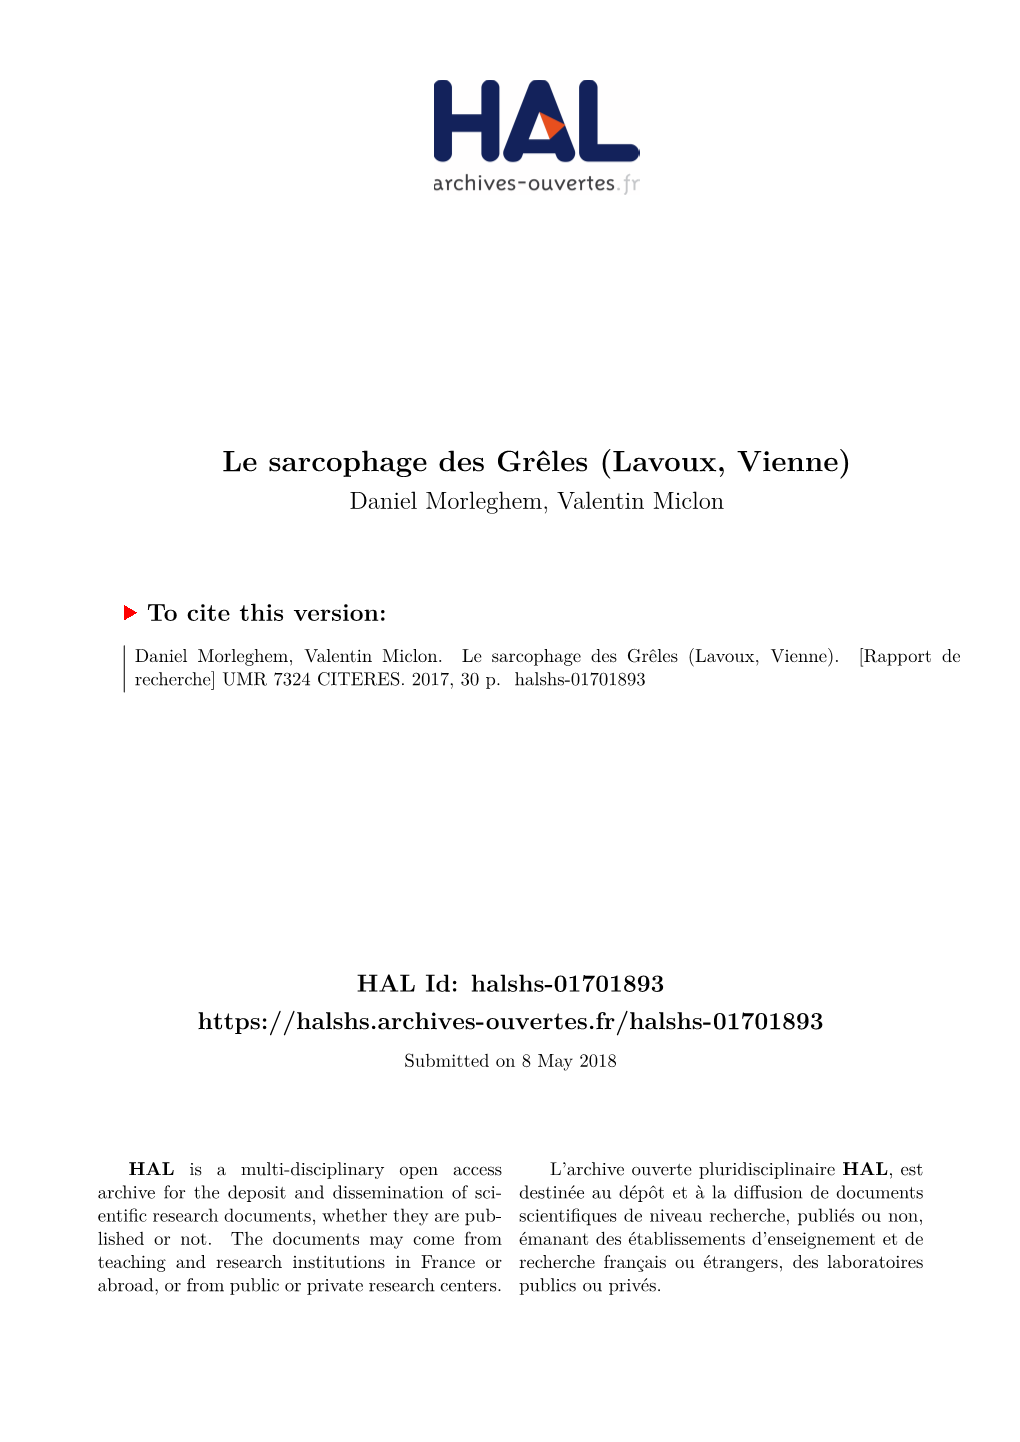 Le Sarcophage Des Grêles (Lavoux, Vienne) Daniel Morleghem, Valentin Miclon